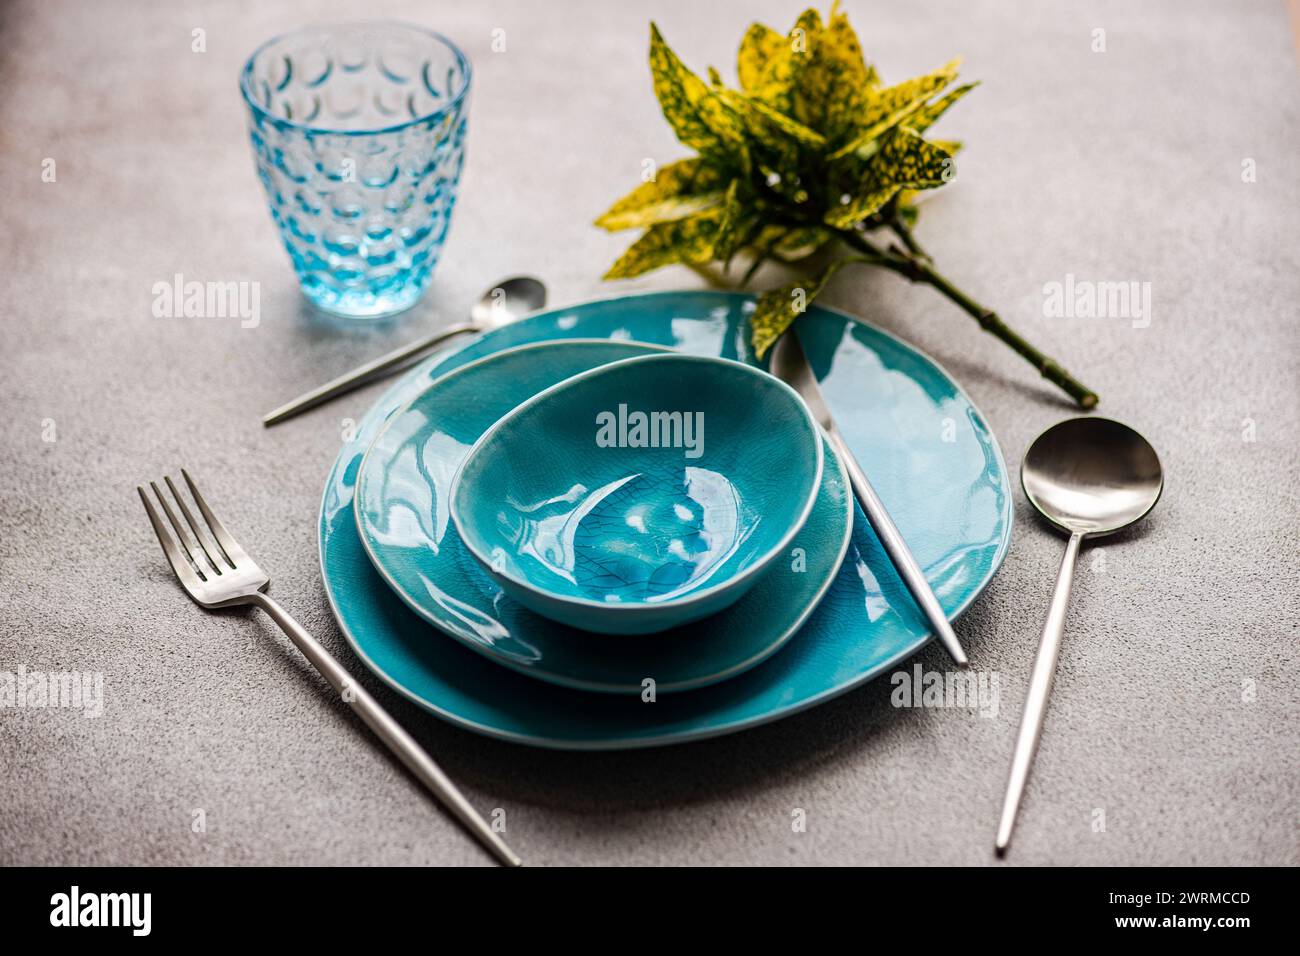 Vaisselle turquoise éclatante avec verre et couverts assortis sur une surface grise texturée. Banque D'Images